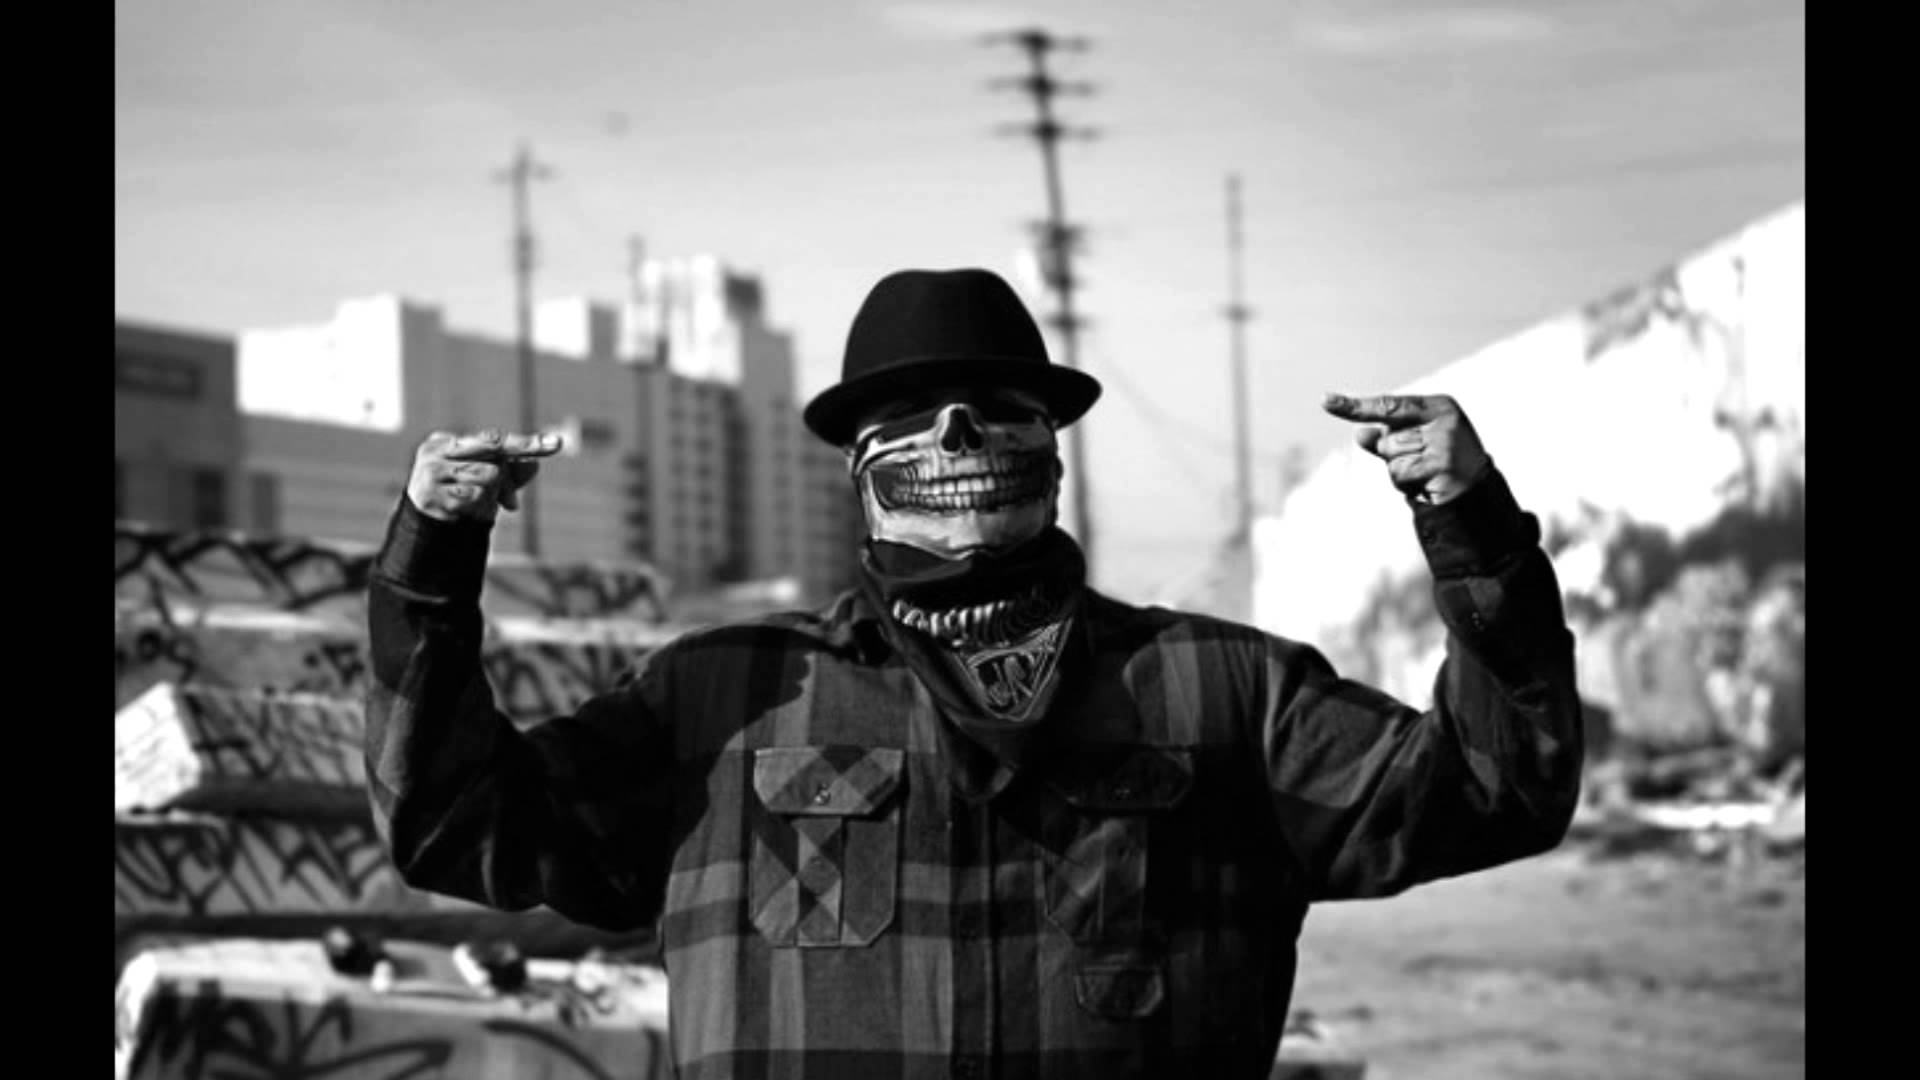 Free download Criminal Impetus Hard Gangsta Rap Instrumental